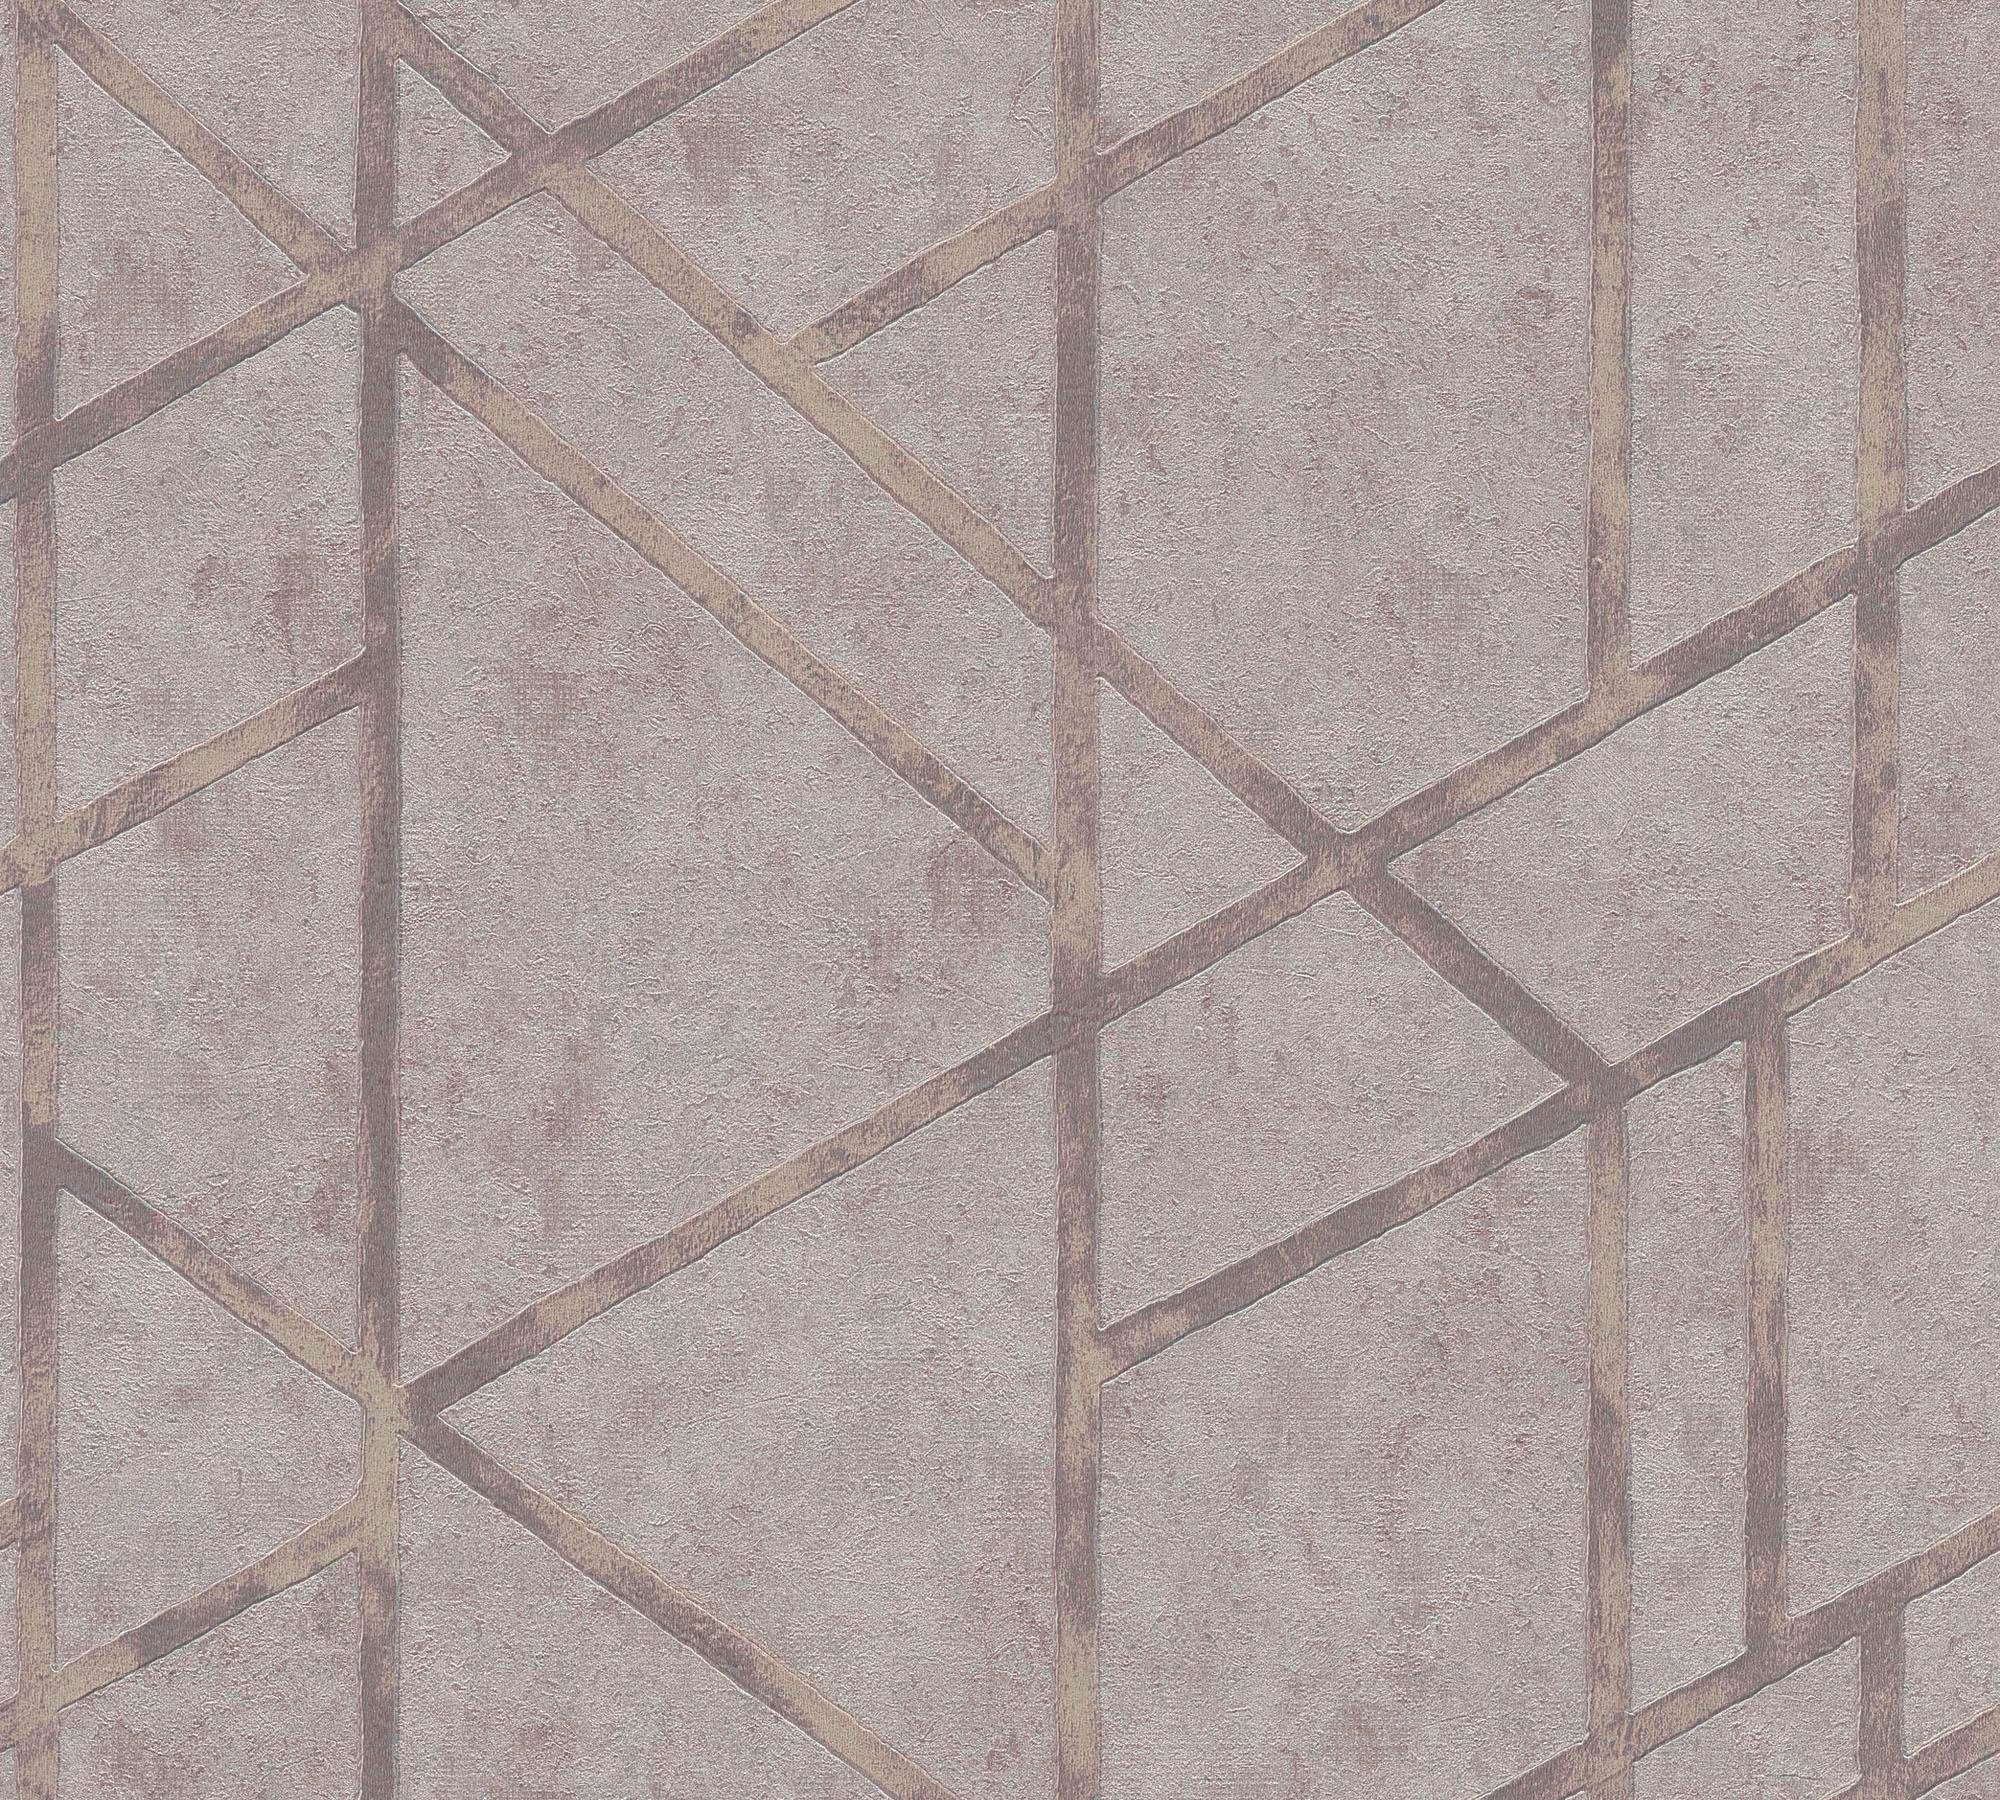 A.S. Création living walls Vliestapete Metropolitan Stories Francesca Milano grafisch, geometrisch, grafisch, Grafik Tapete Geometrisch Metallic grau/silber